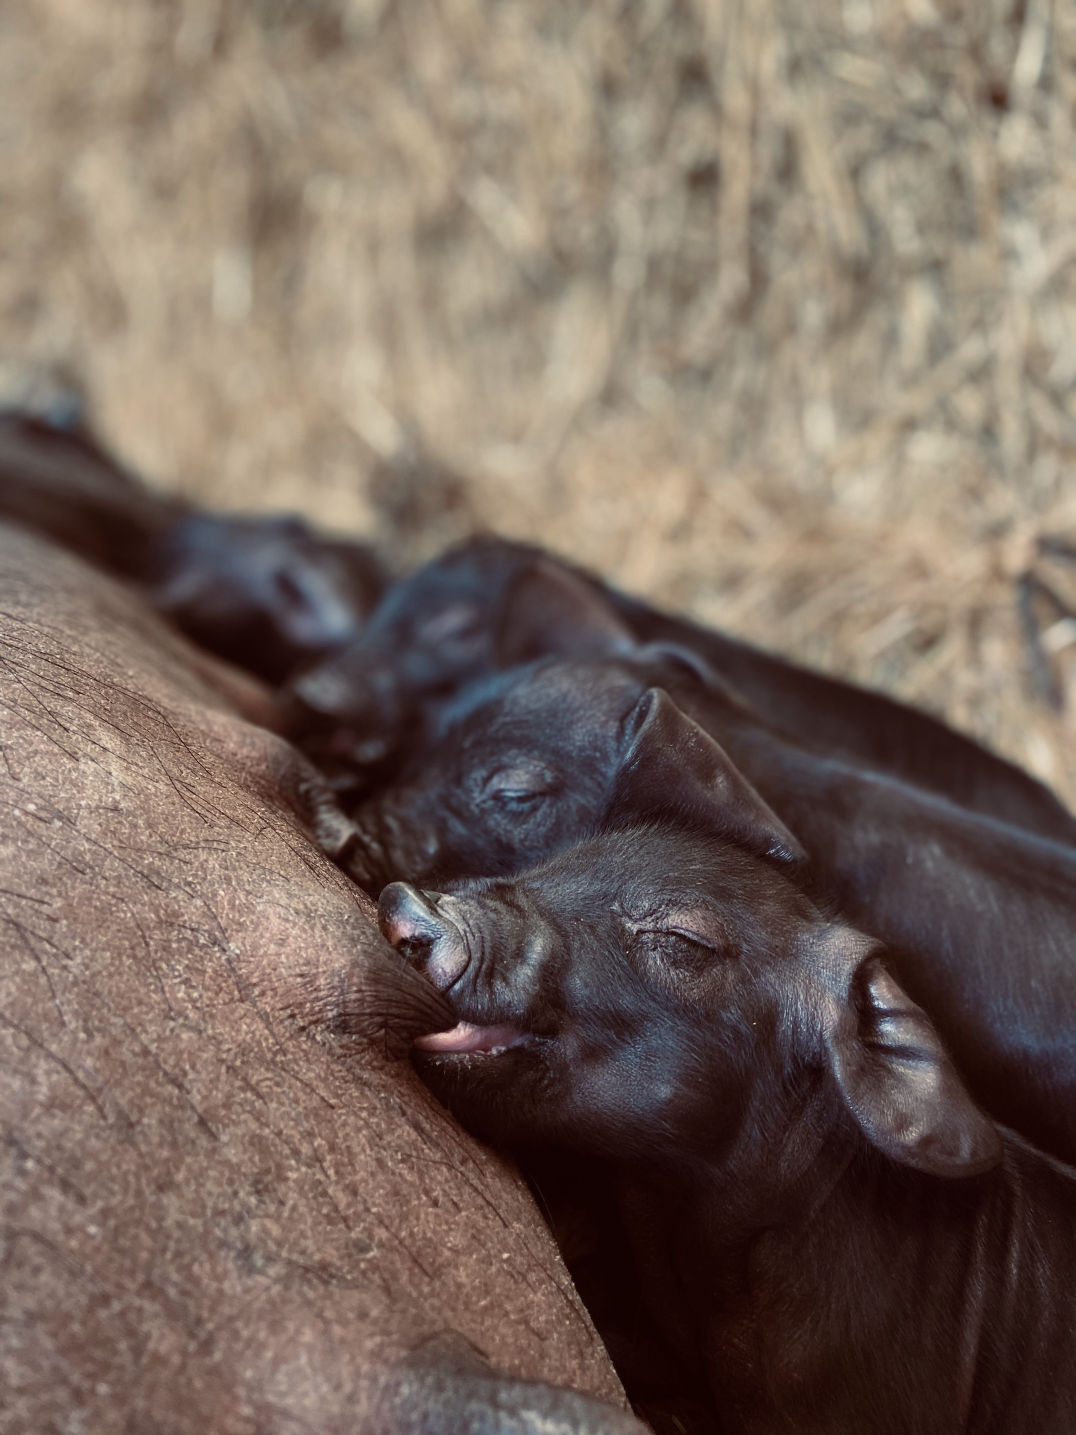 Large black newborn piglets